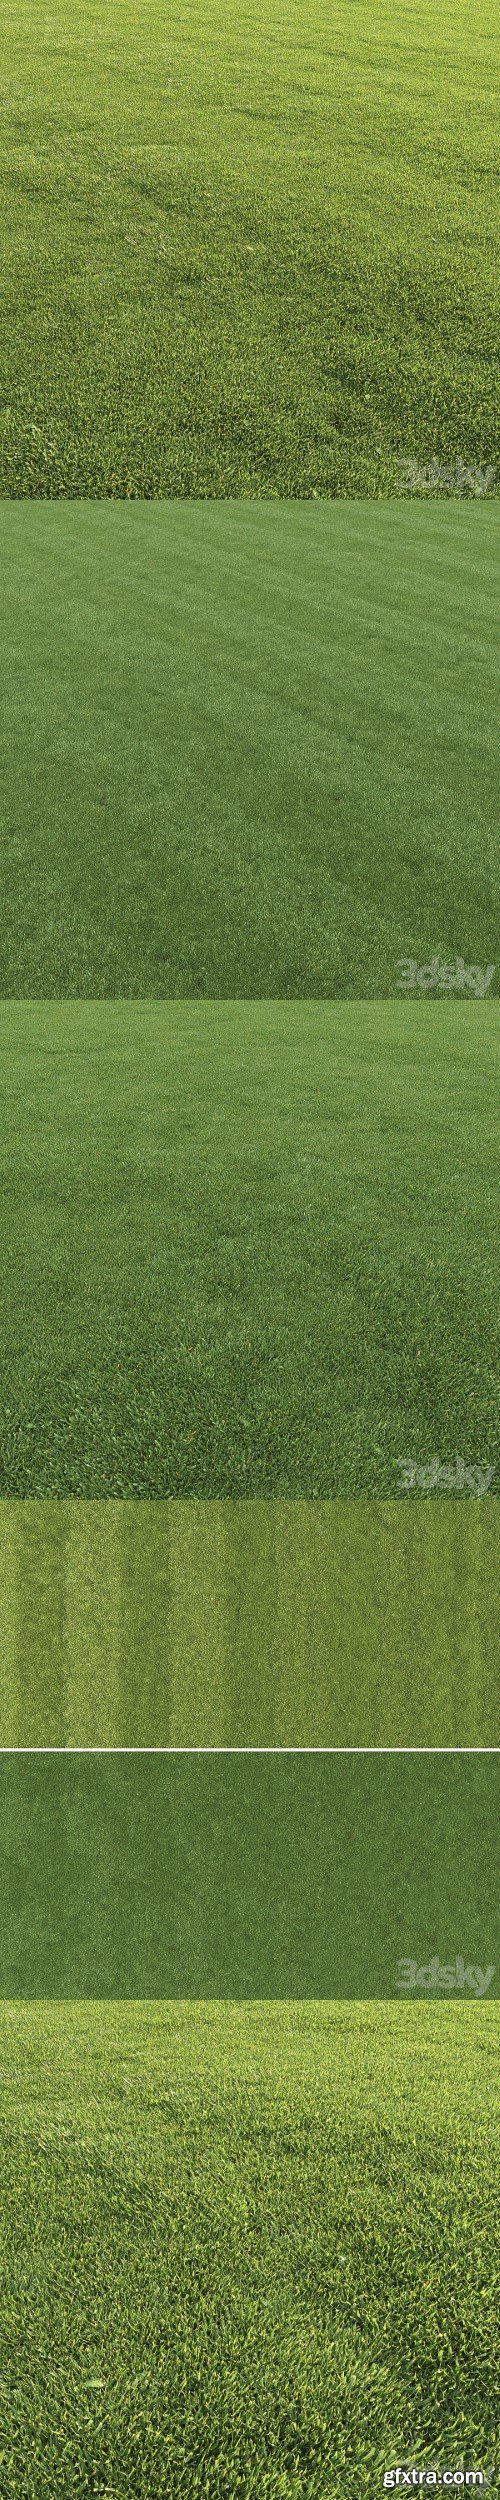 Pro 3DSky - Lawn grass